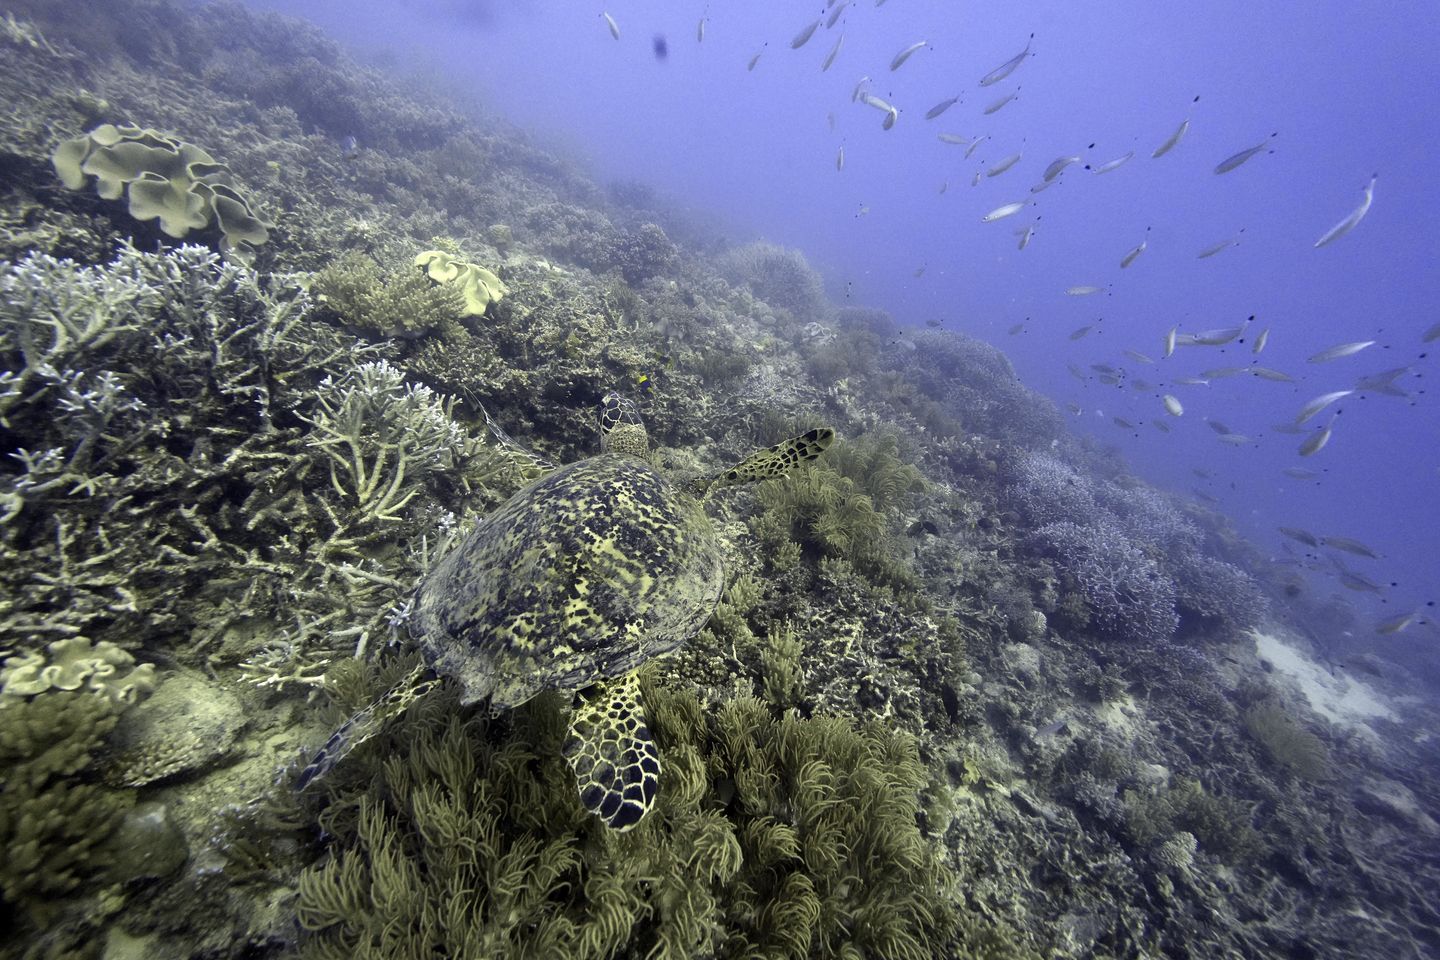 Uluslar açık denizlerdeki deniz yaşamını korumak için anlaşmaya varıyor